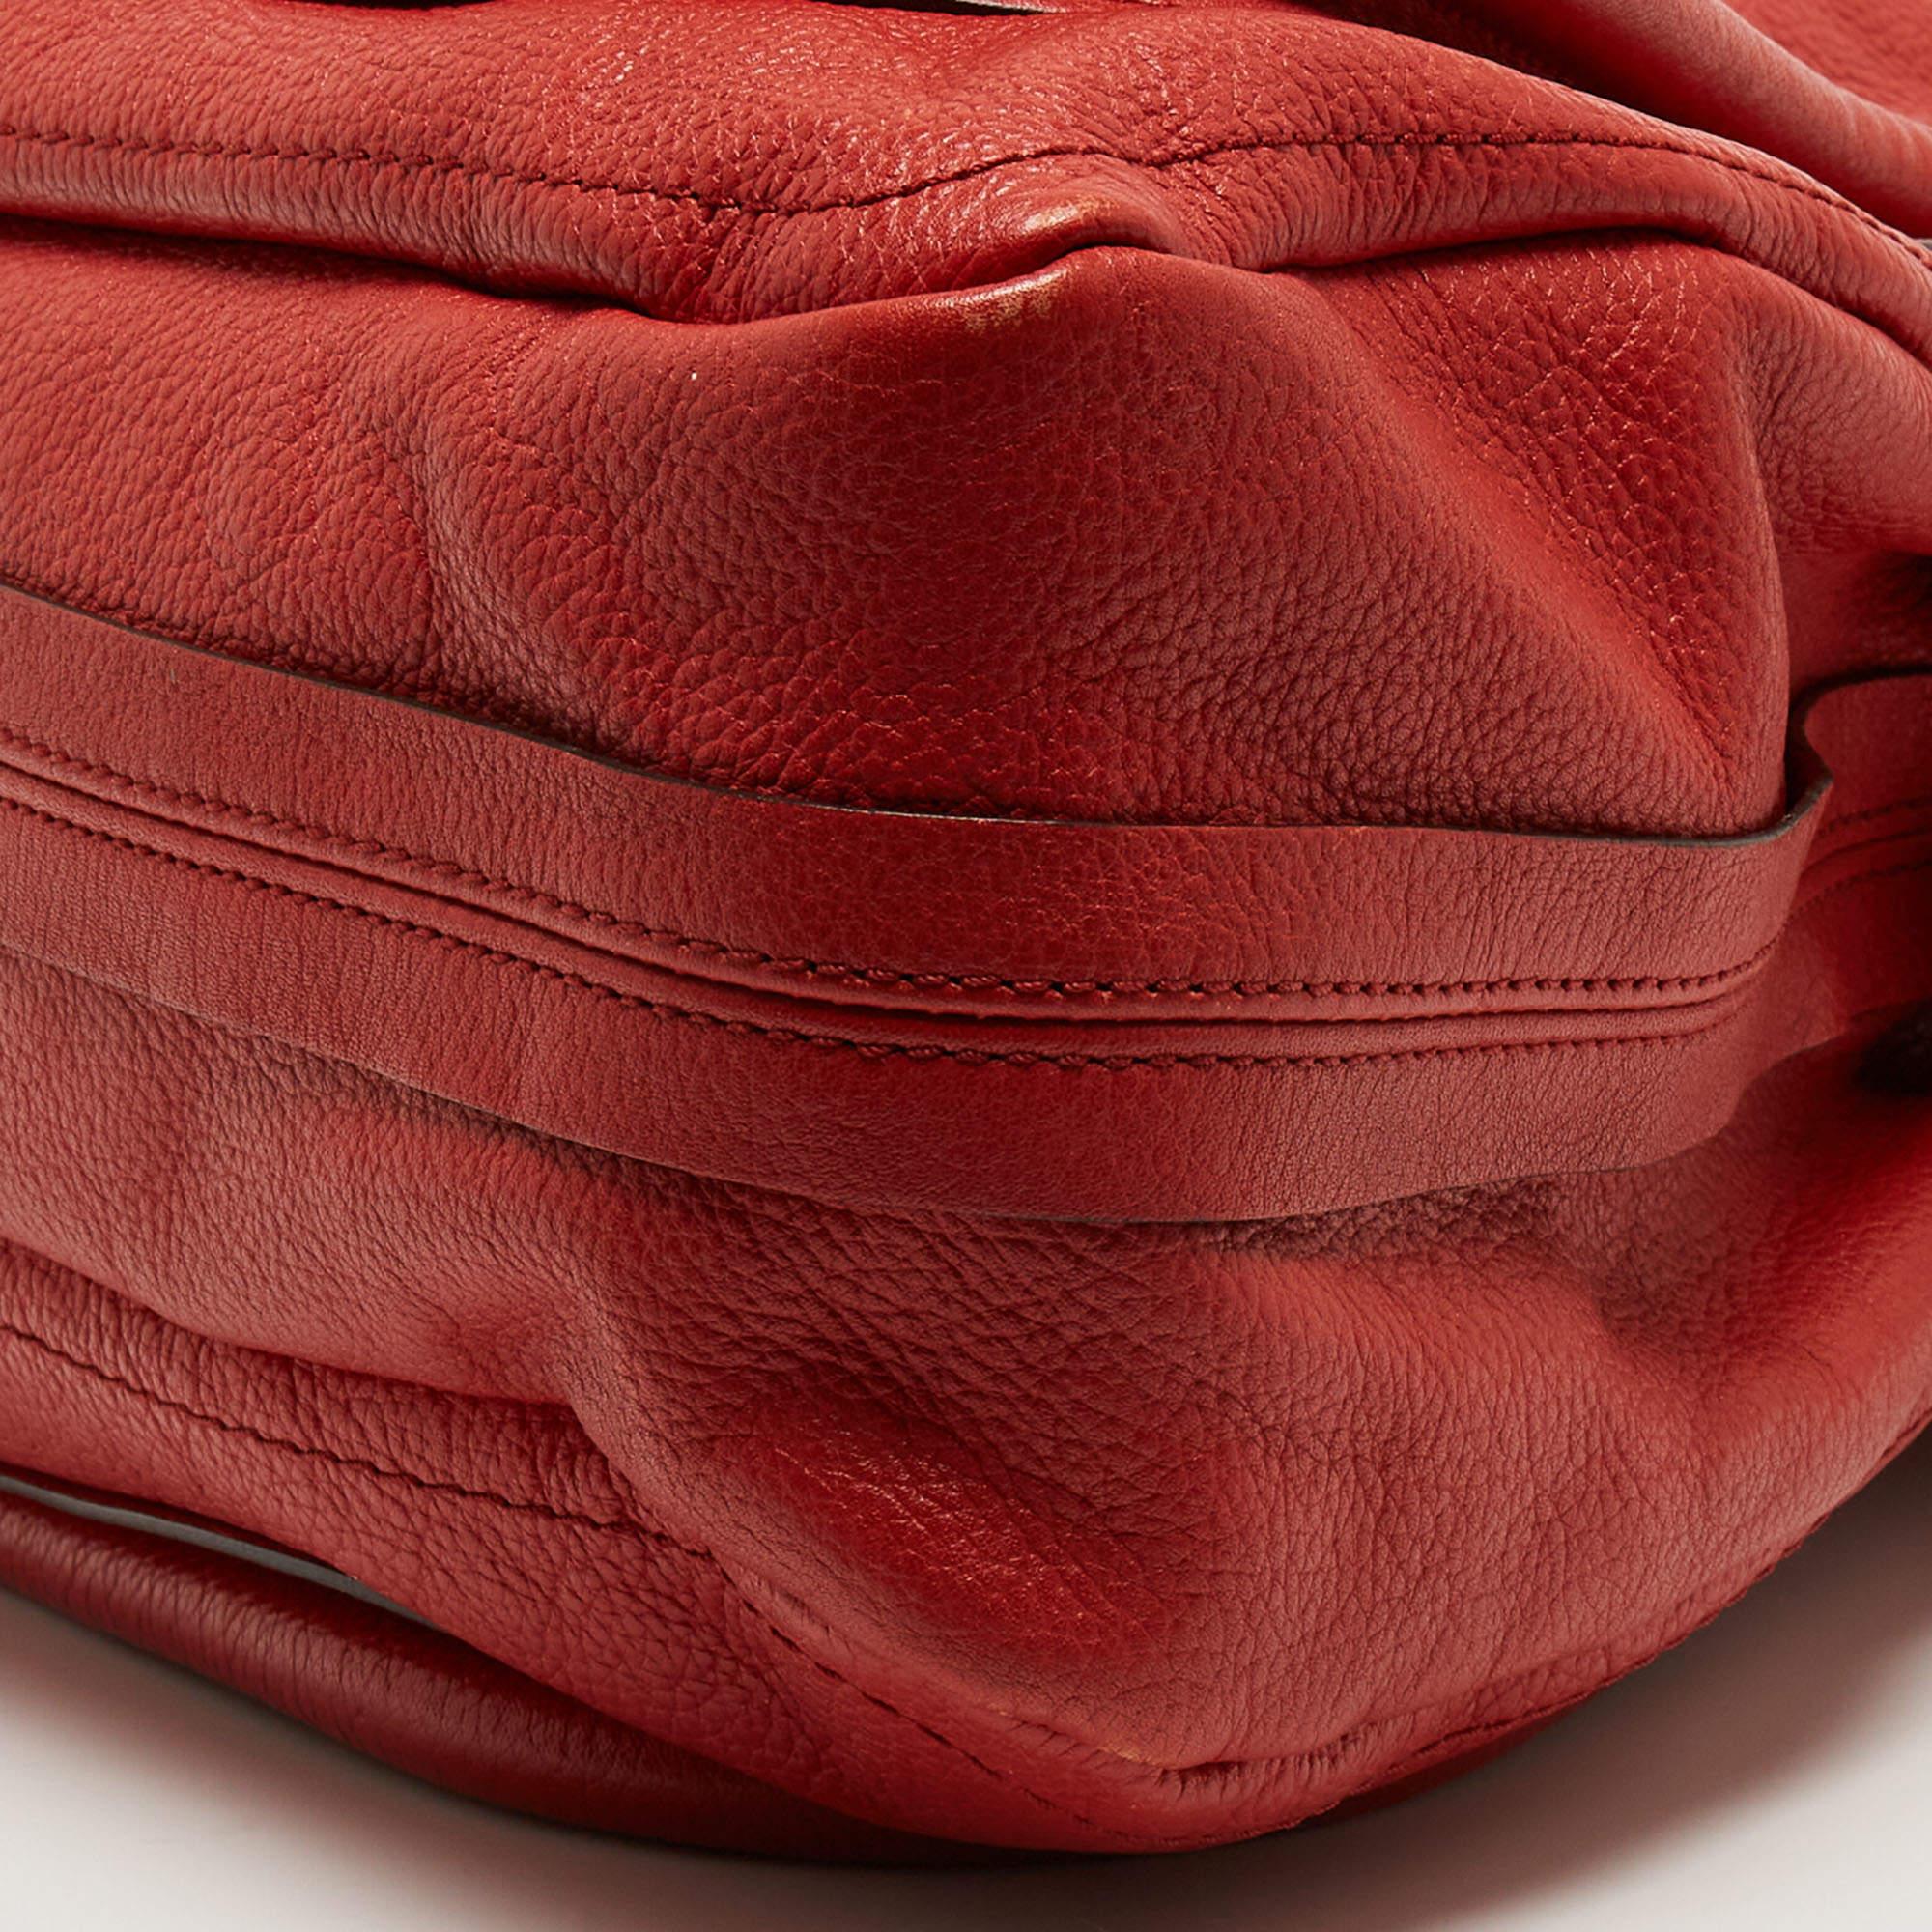 Chloe Brick Red Leather Large Paraty Shoulder Bag 4